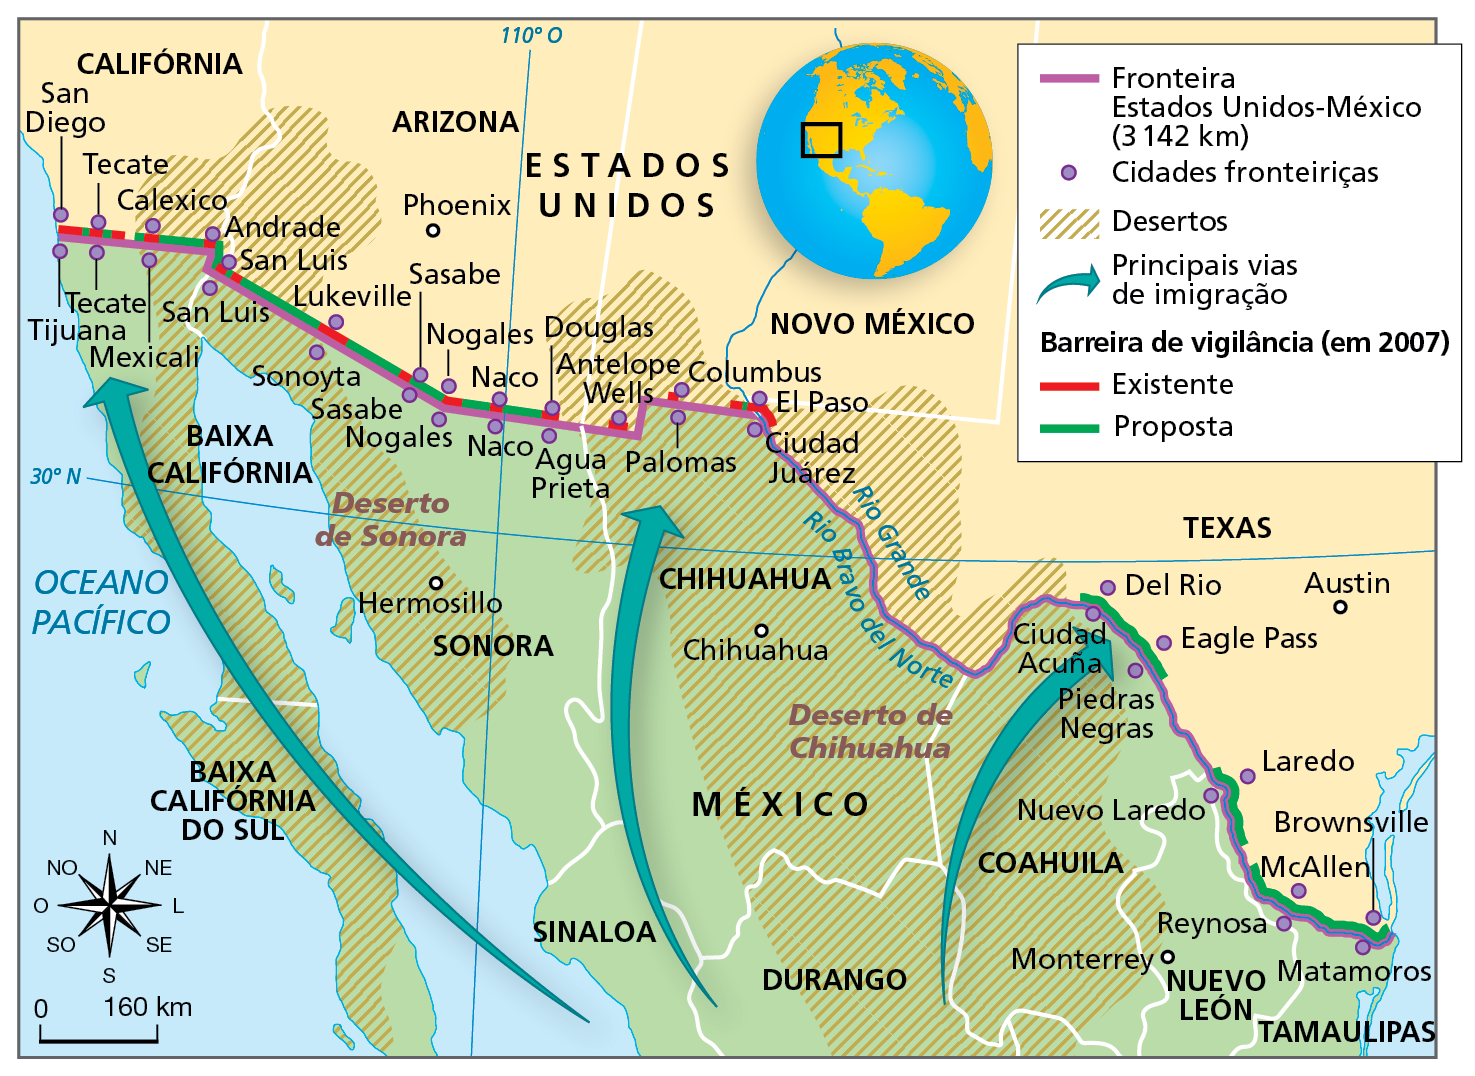 Mapa. Fronteira México-Estados Unidos: muro e cidades fronteiriças. Mapa representando a zona de fronteira entre o México e os Estados Unidos. Na parte superior, trecho fronteiriço do território dos Estados Unidos, com a delimitação dos estados da Califórnia, Arizona, Novo México e Texas; na parte inferior, trecho fronteiriço do território do México, com a delimitação dos estados da Baixa Califórnia, Baixa Califórnia do Sul, Sonora, Chihuahua, Sinaloa, Durango, Coahuila, Nuevo León Tamaulipas. No limite entre ambos os países, traçado da fronteira com extensão de 3.142 quilômetros e localização das cidades fronteiriças. Cidades fronteiriças com barreiras de vigilância existentes e propostas (Estados Unidos-México):  San Diego-Tijuana (existente).  Tecate-Tecate (existente). Calexico-Mexicale (existente). Andrade (existente). San Luis-San Luis (existente). Lukeville-Sonoyta (existente).  Sasabe-Sasabe (existente).  Nogales-Nogales (existente).  Naco-Naco (existente).  Douglas-Agua Prieta (existente). Antelope Wells (existente). Columbus-Palomas (existente).  El Paso-Ciudad Juarez (existente). Del Rio-Ciudad Acuña (proposta). Eagle Pass-Piedras Negras (proposta).  Laredo-Nuevo Laredo (proposta)  Brownsville-Matamoros (proposta). McAllen-Reynosa (proposta).  Desertos: Deserto de Chihuahua, se estende da porção central do México até porções ao sul dos estados do Arizona, Novo Mexico e Texas, nos Estados Unidos; Deserto de Sonora, se estende da porção oeste do México até uma faixa que abrange áreas ao sul da Califórnia e do Arizona, nos Estados Unidos. Principais vias de imigração: do centro do México em direção ao oeste, centro e leste da fronteira do Estados Unidos.  Na parte inferior, à esquerda, rosa dos ventos e escala de 0 a 160 quilômetros.